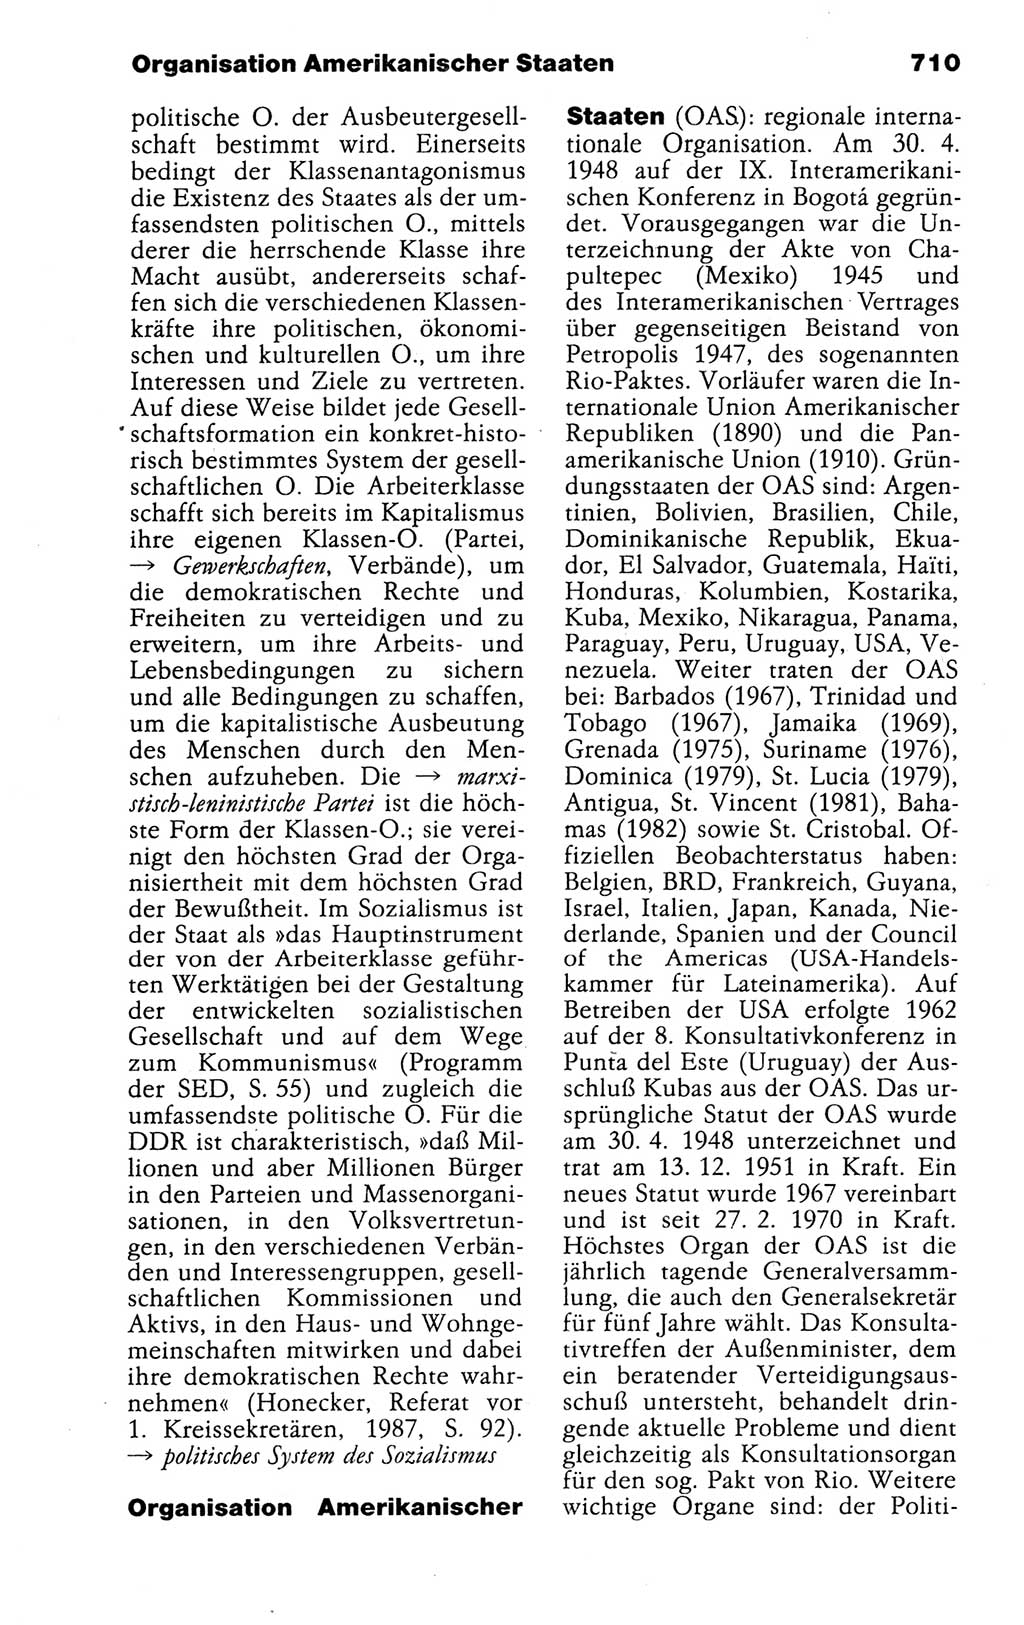 Kleines politisches Wörterbuch [Deutsche Demokratische Republik (DDR)] 1988, Seite 710 (Kl. pol. Wb. DDR 1988, S. 710)